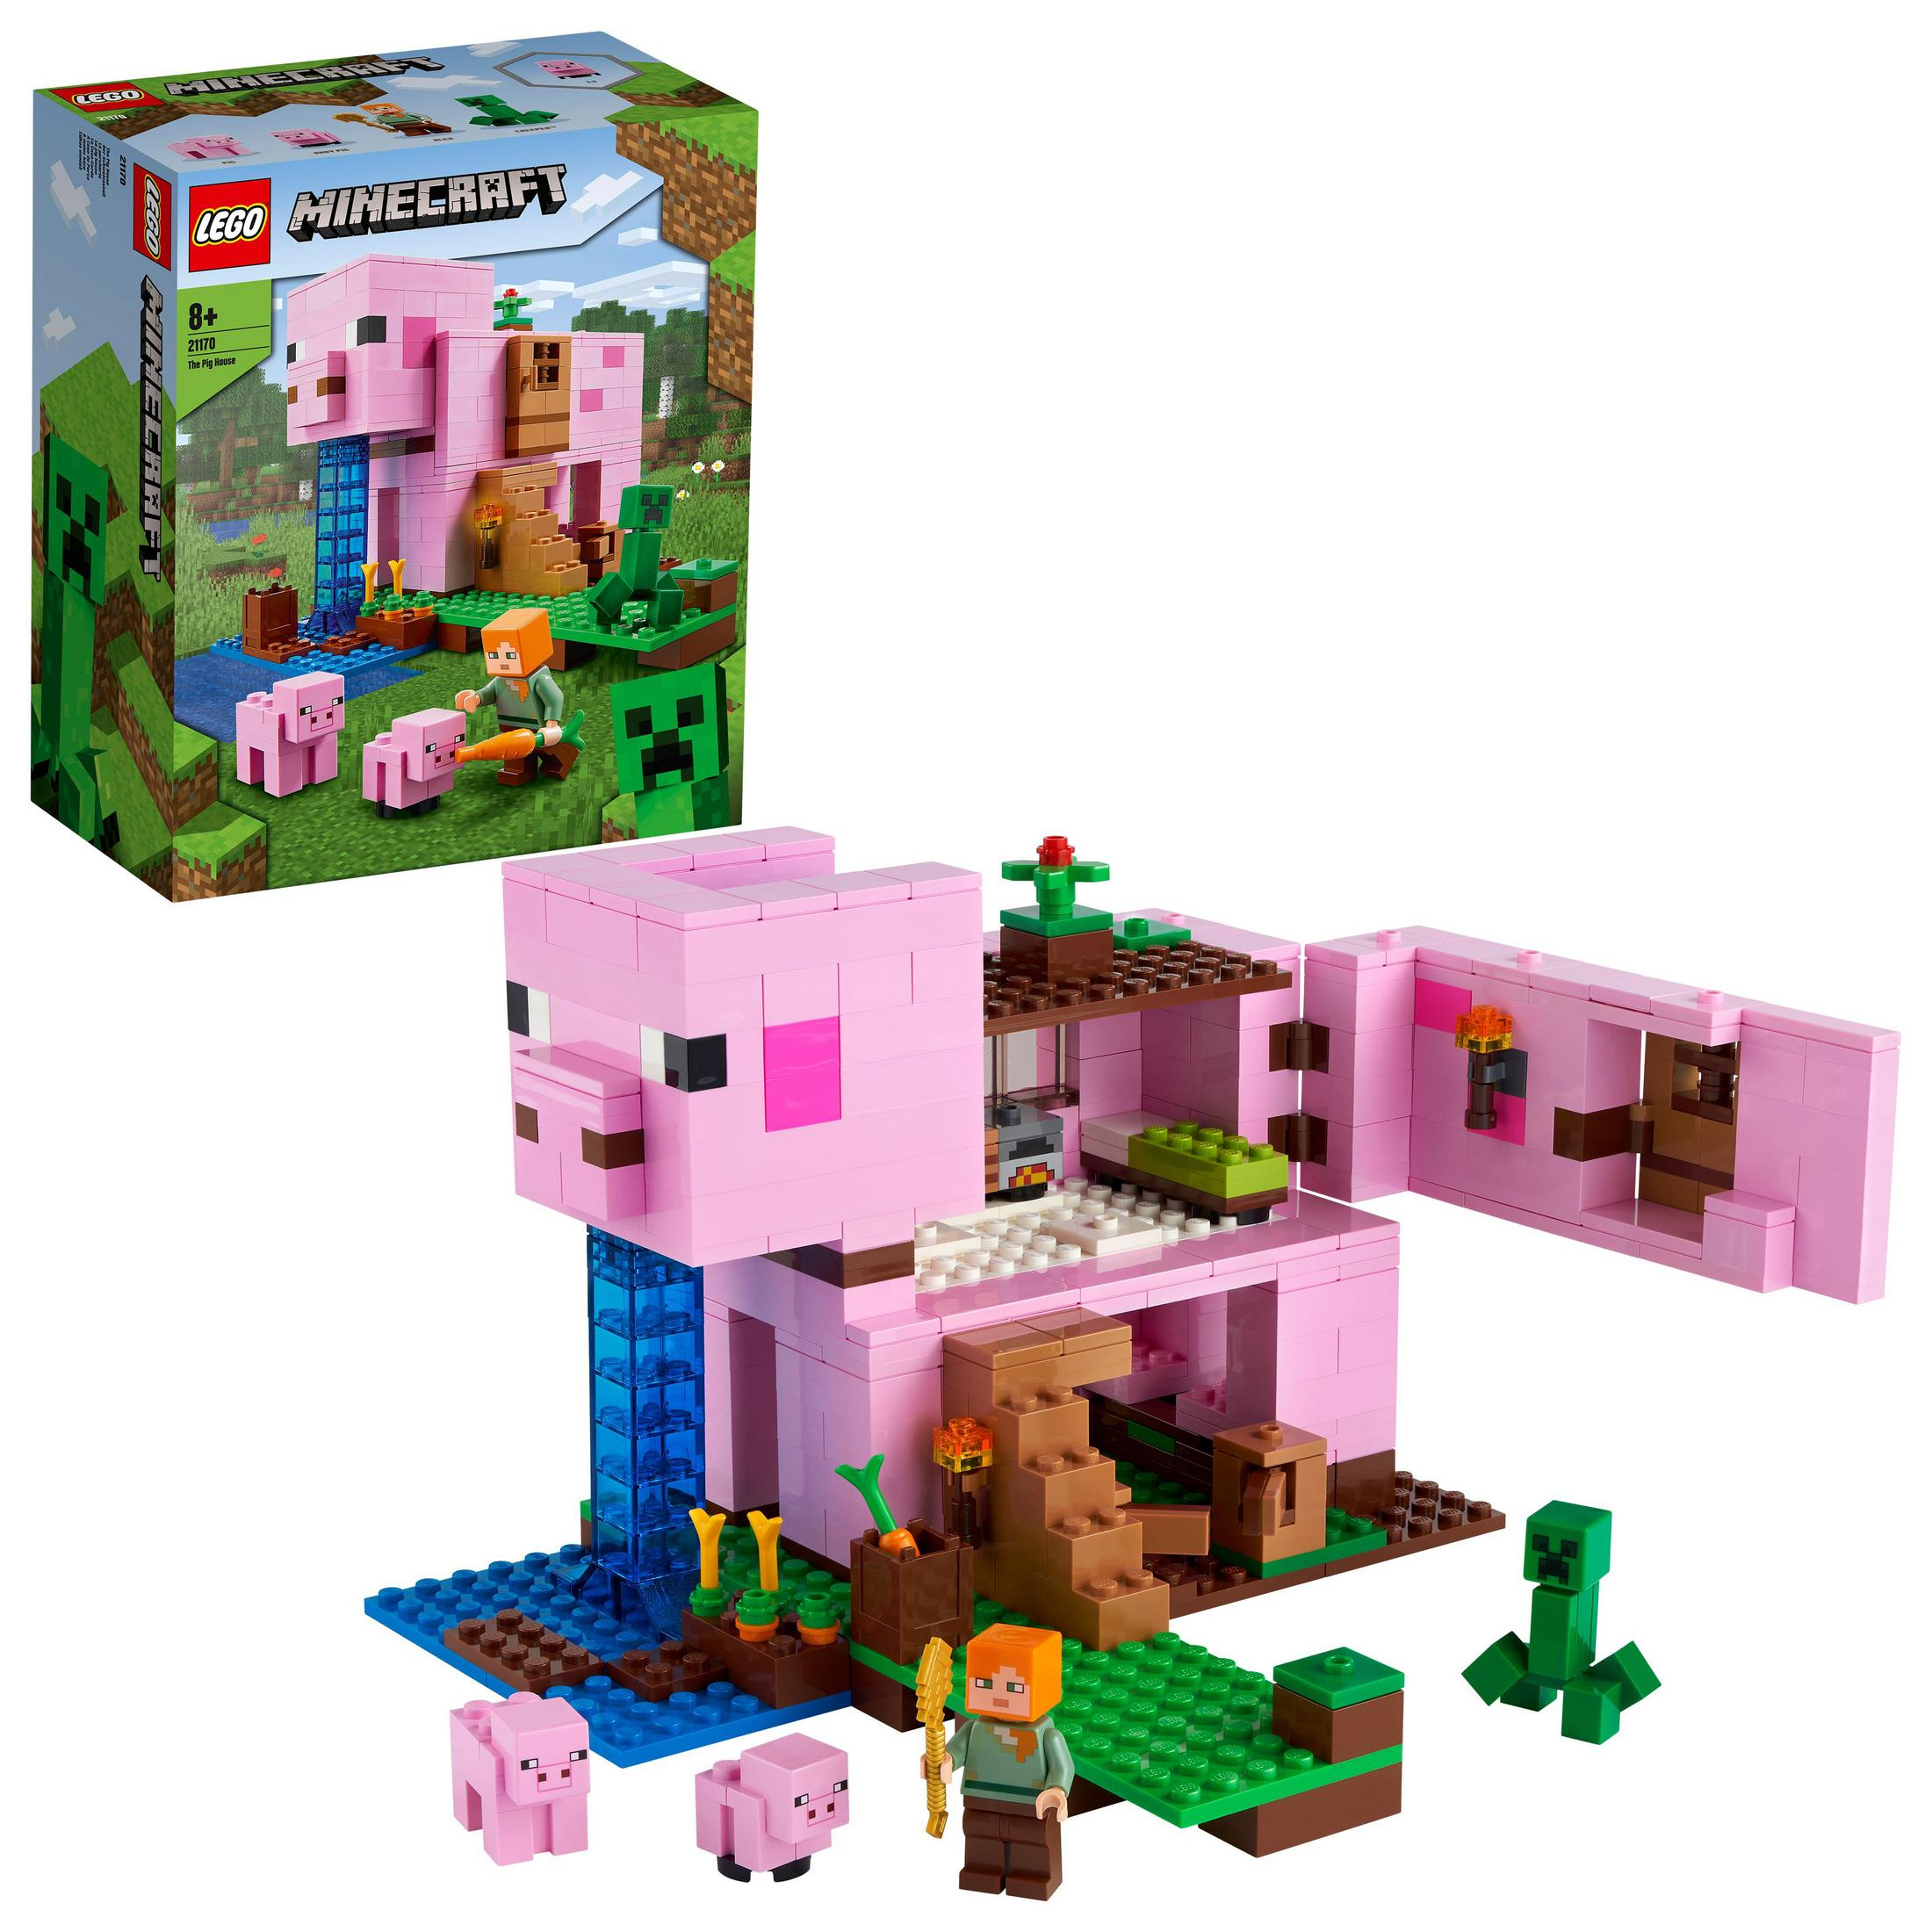 LEGO SCHWEINEHAUS 21170 Minecraft DAS LEGO